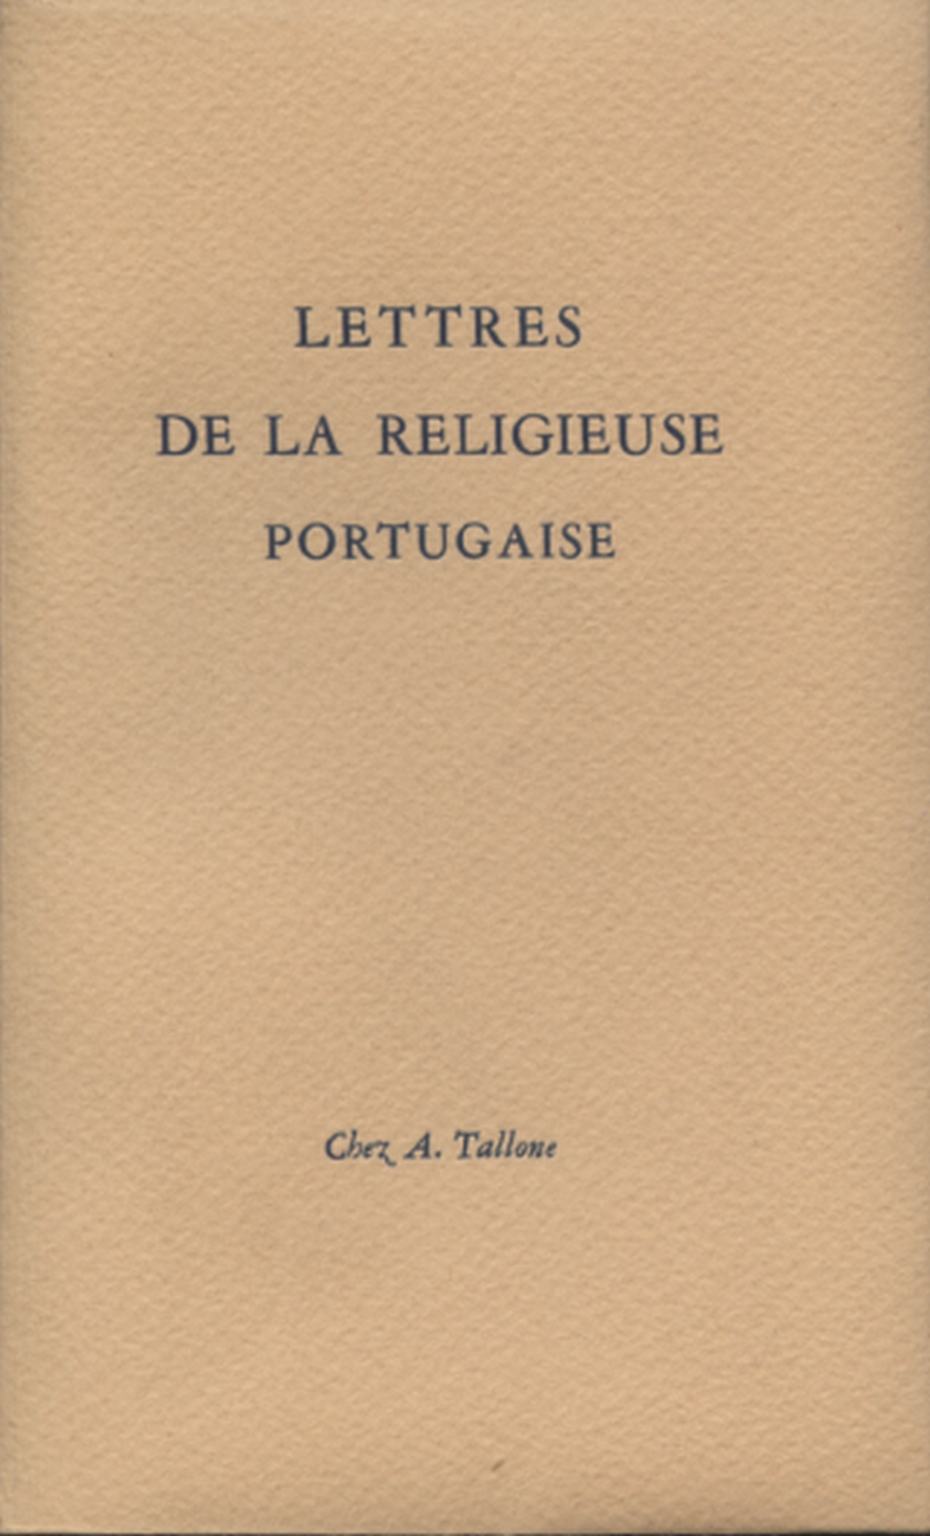 Lettres de la religieuse portugaise, s.a.